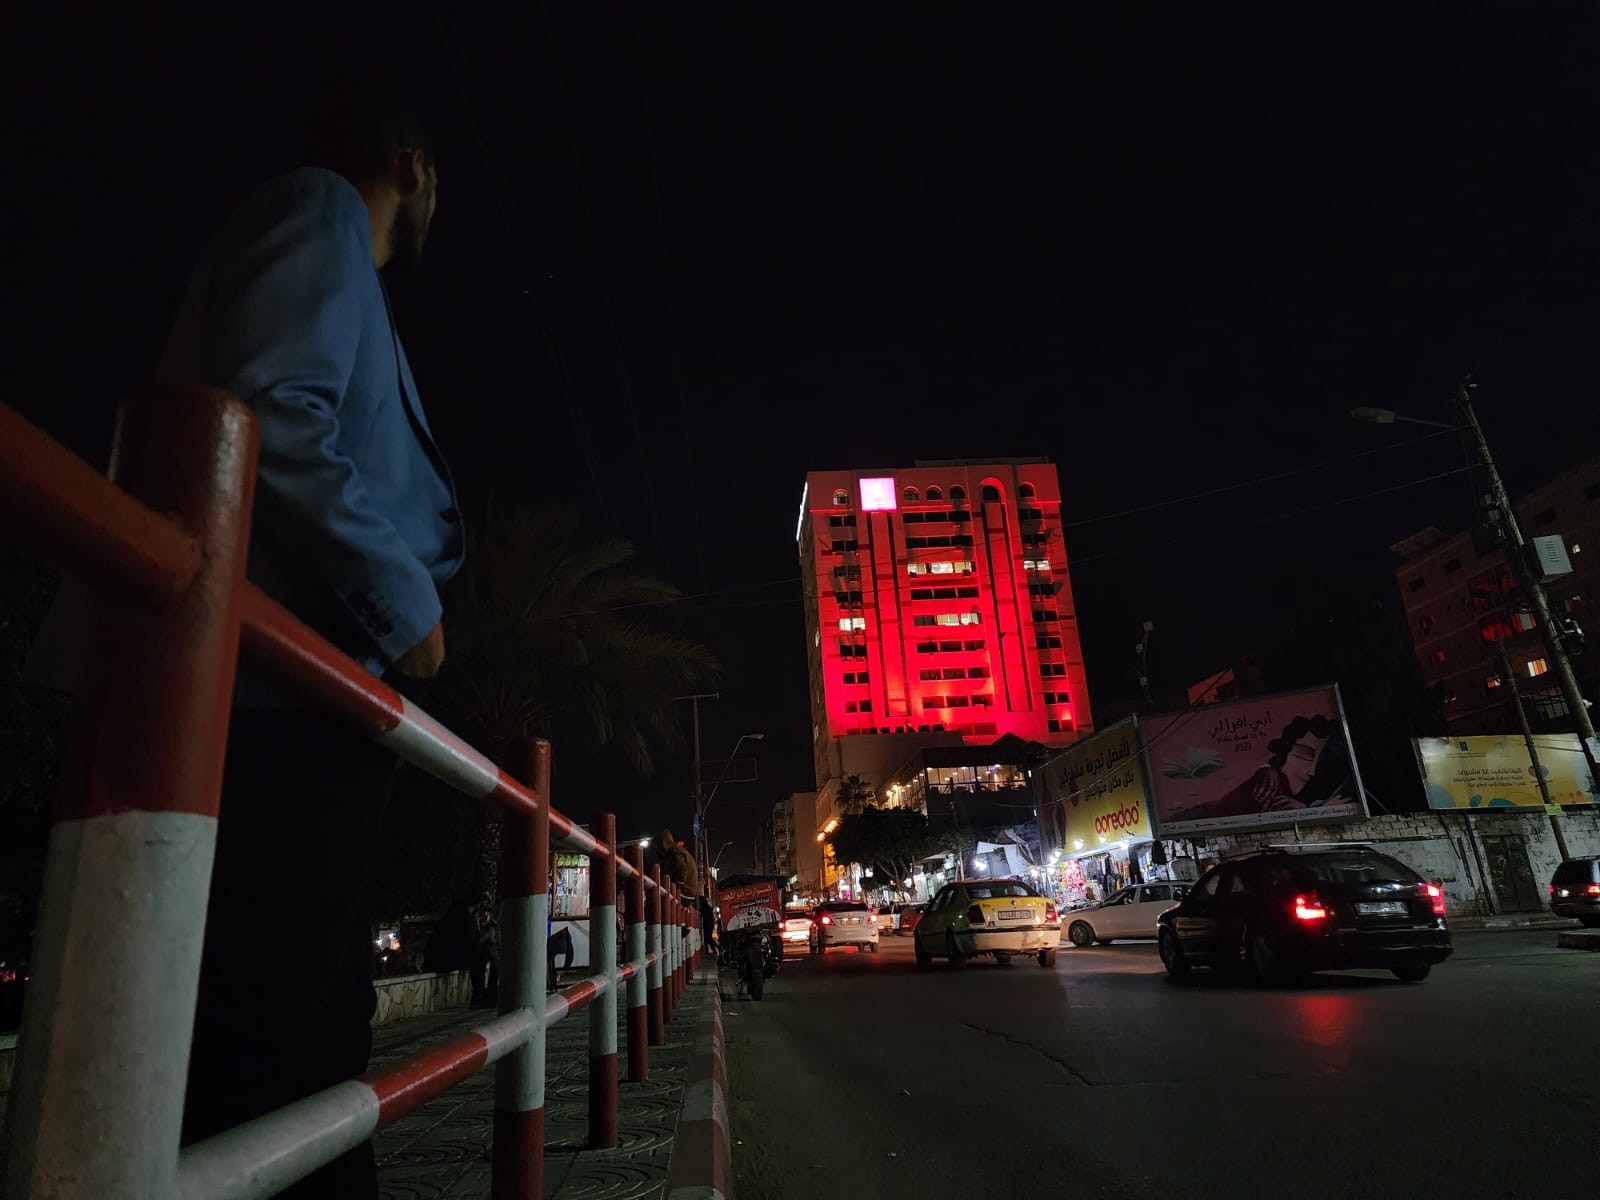 بنك فلسطين يضيئ مبني مقر الادارة العامة للبنك في قطاع غزة بلون العلم المغربي 4.jpg